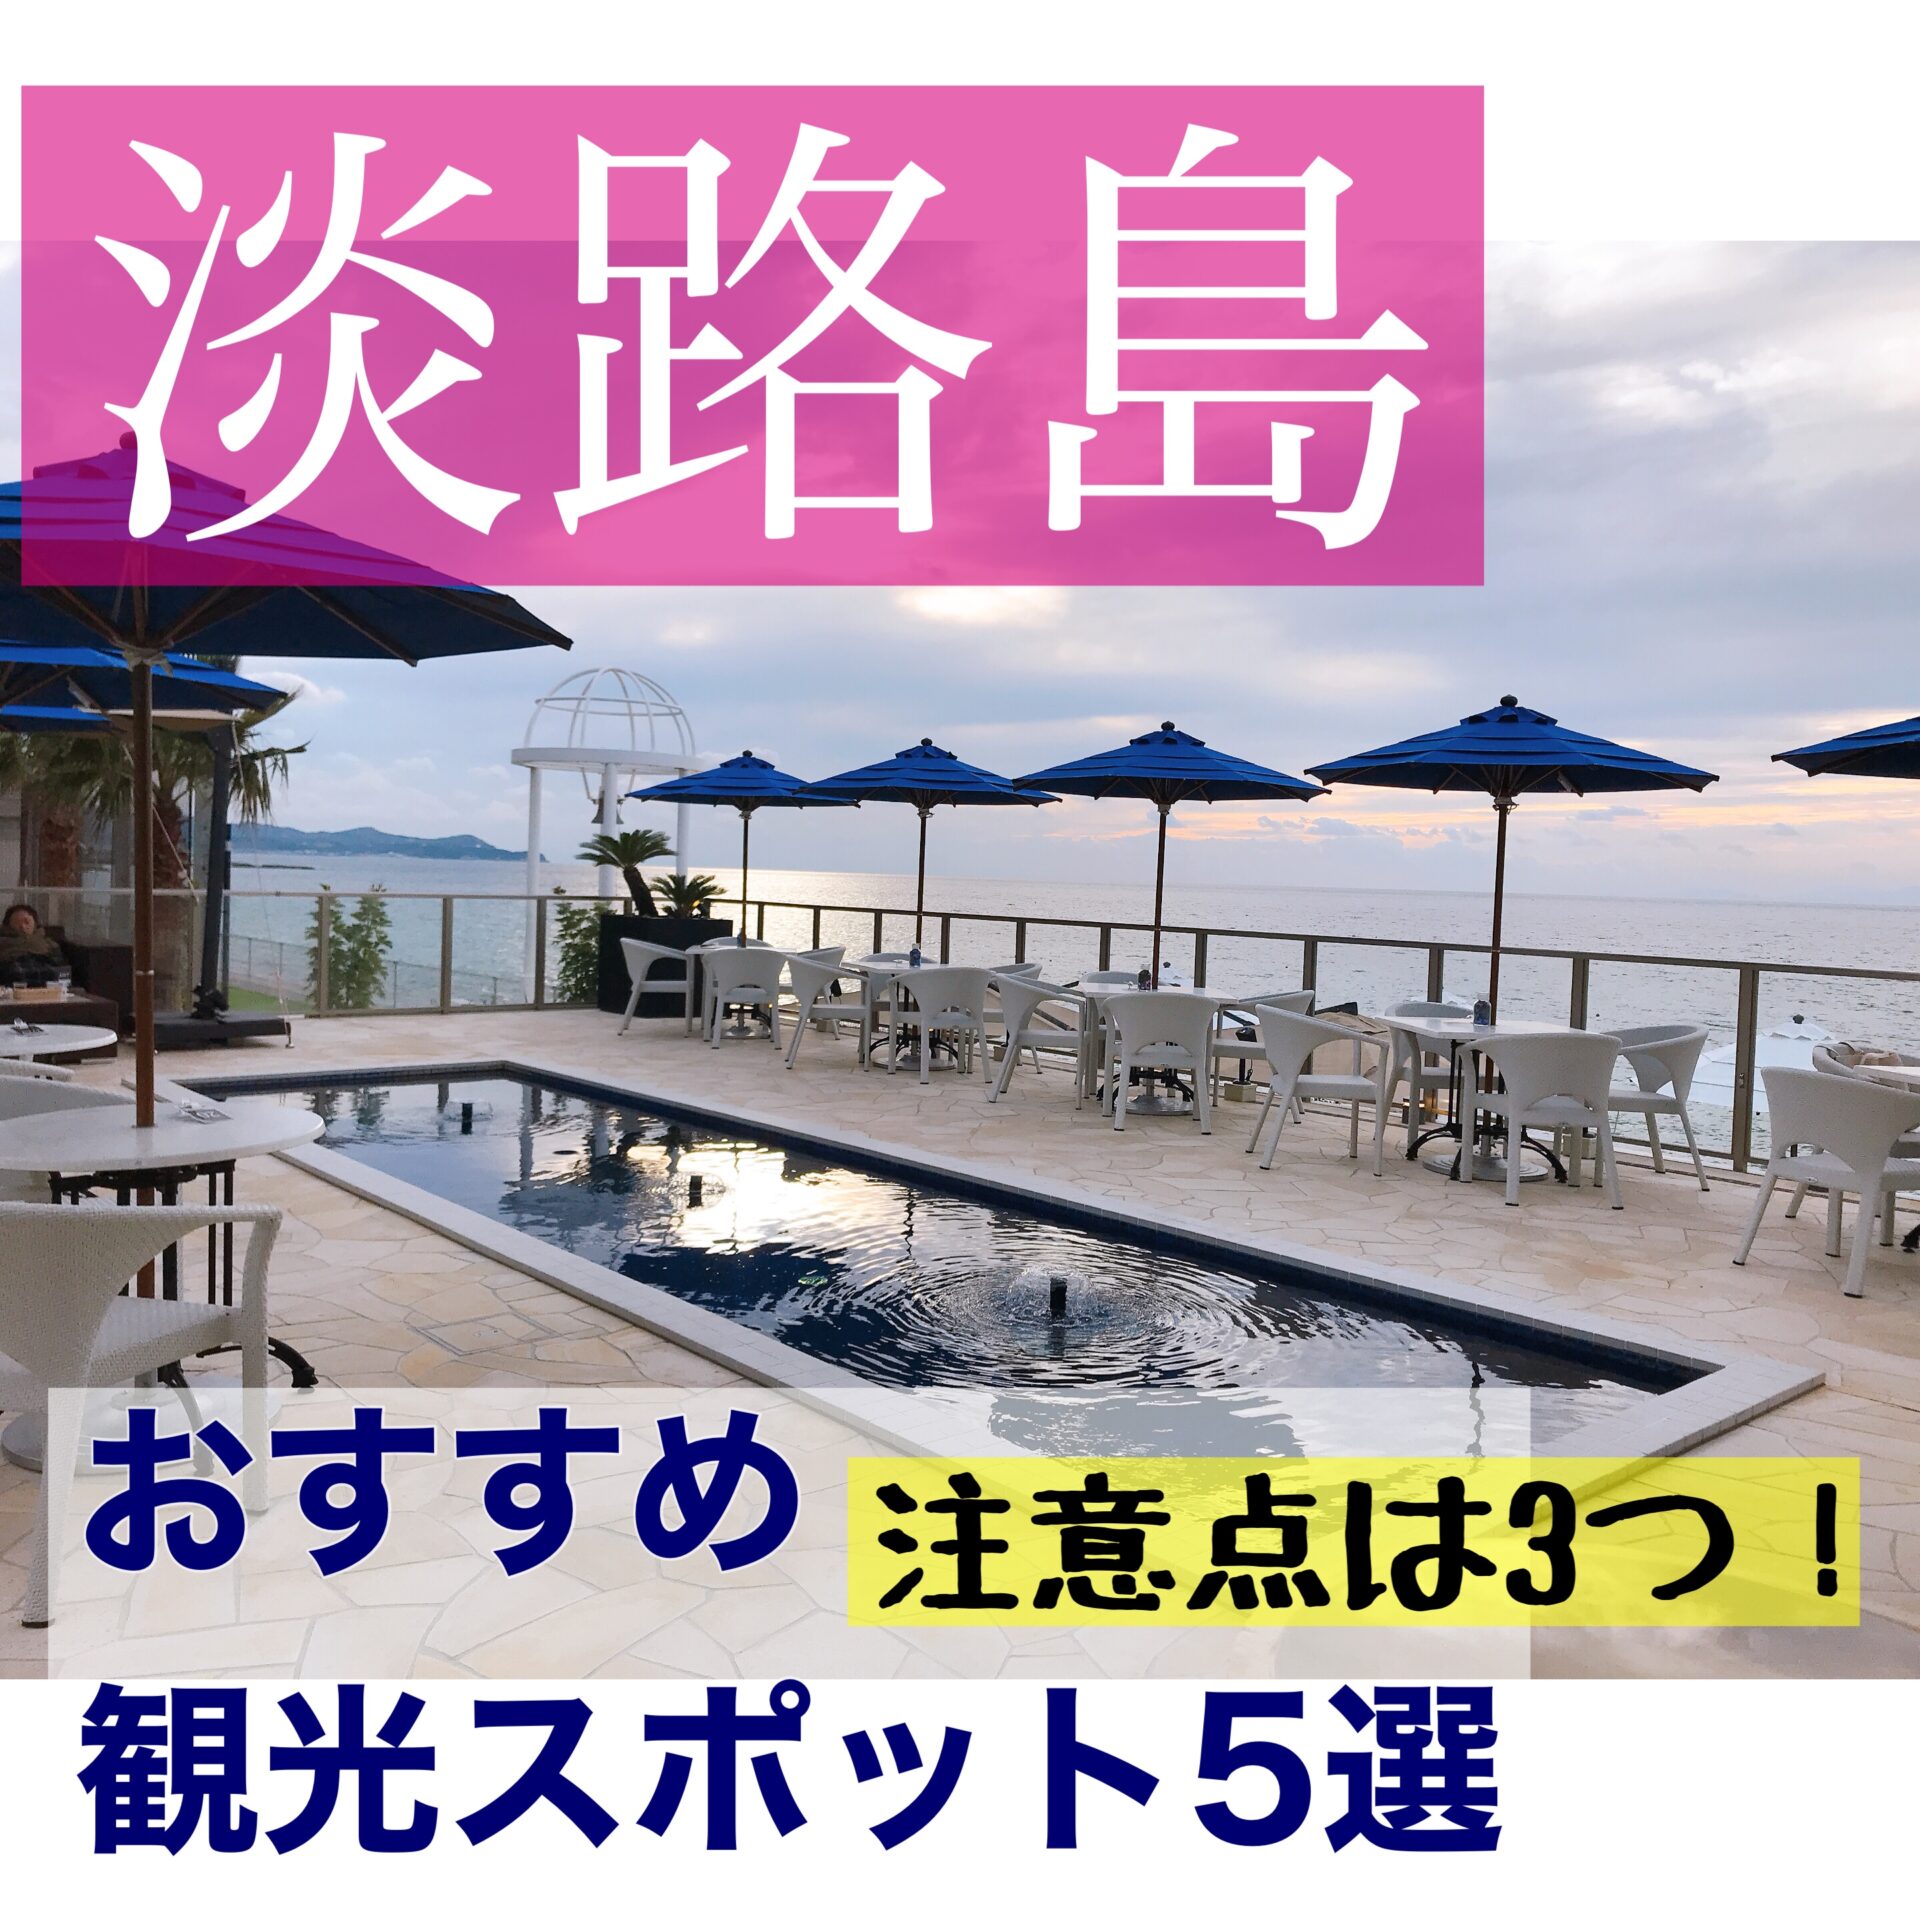 淡路島旅行 おすすめ観光スポット5選 注意すべきポイント3つ もふたろブログ